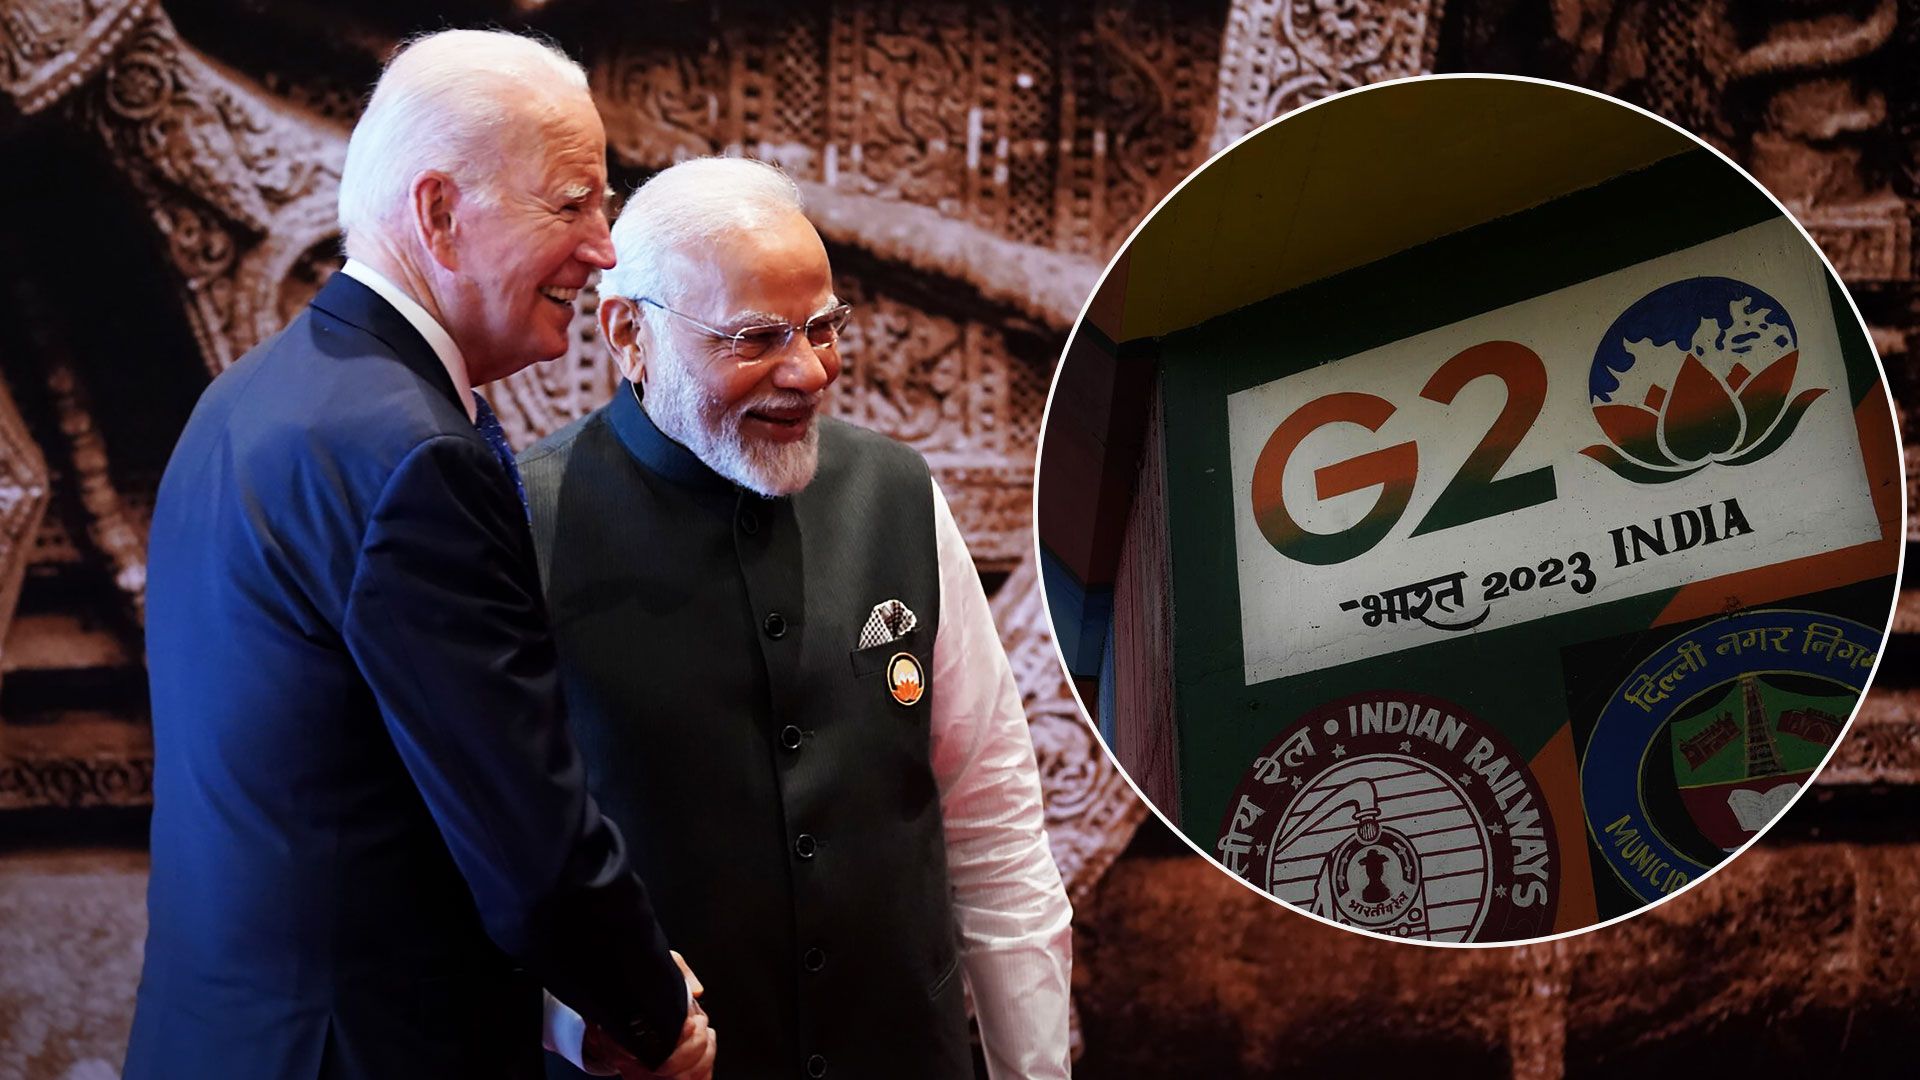 На саммите G20 в Индии согласовали декларацию - осудили ли лидеры G20 агрессию РФ - 24 Канал